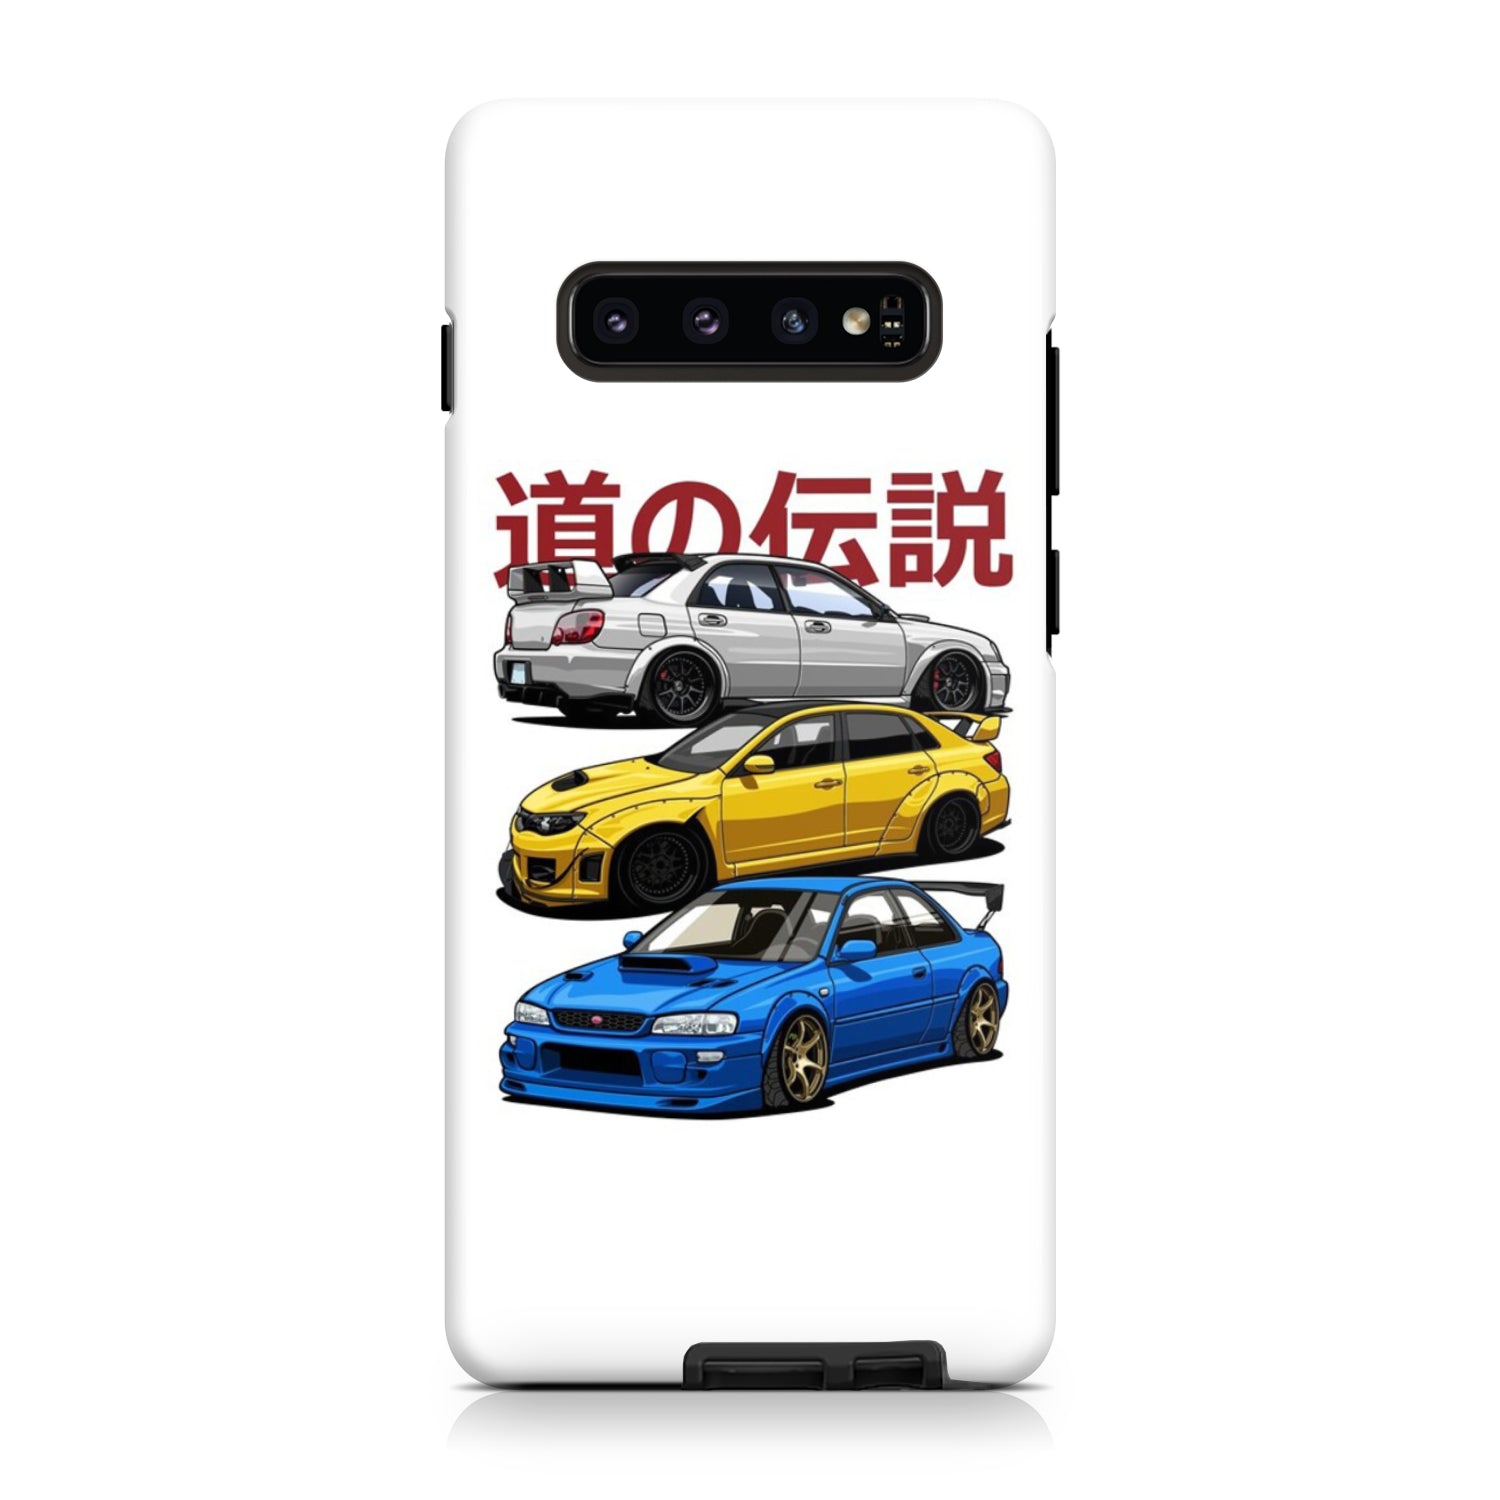 Subaru Legends Phone Case